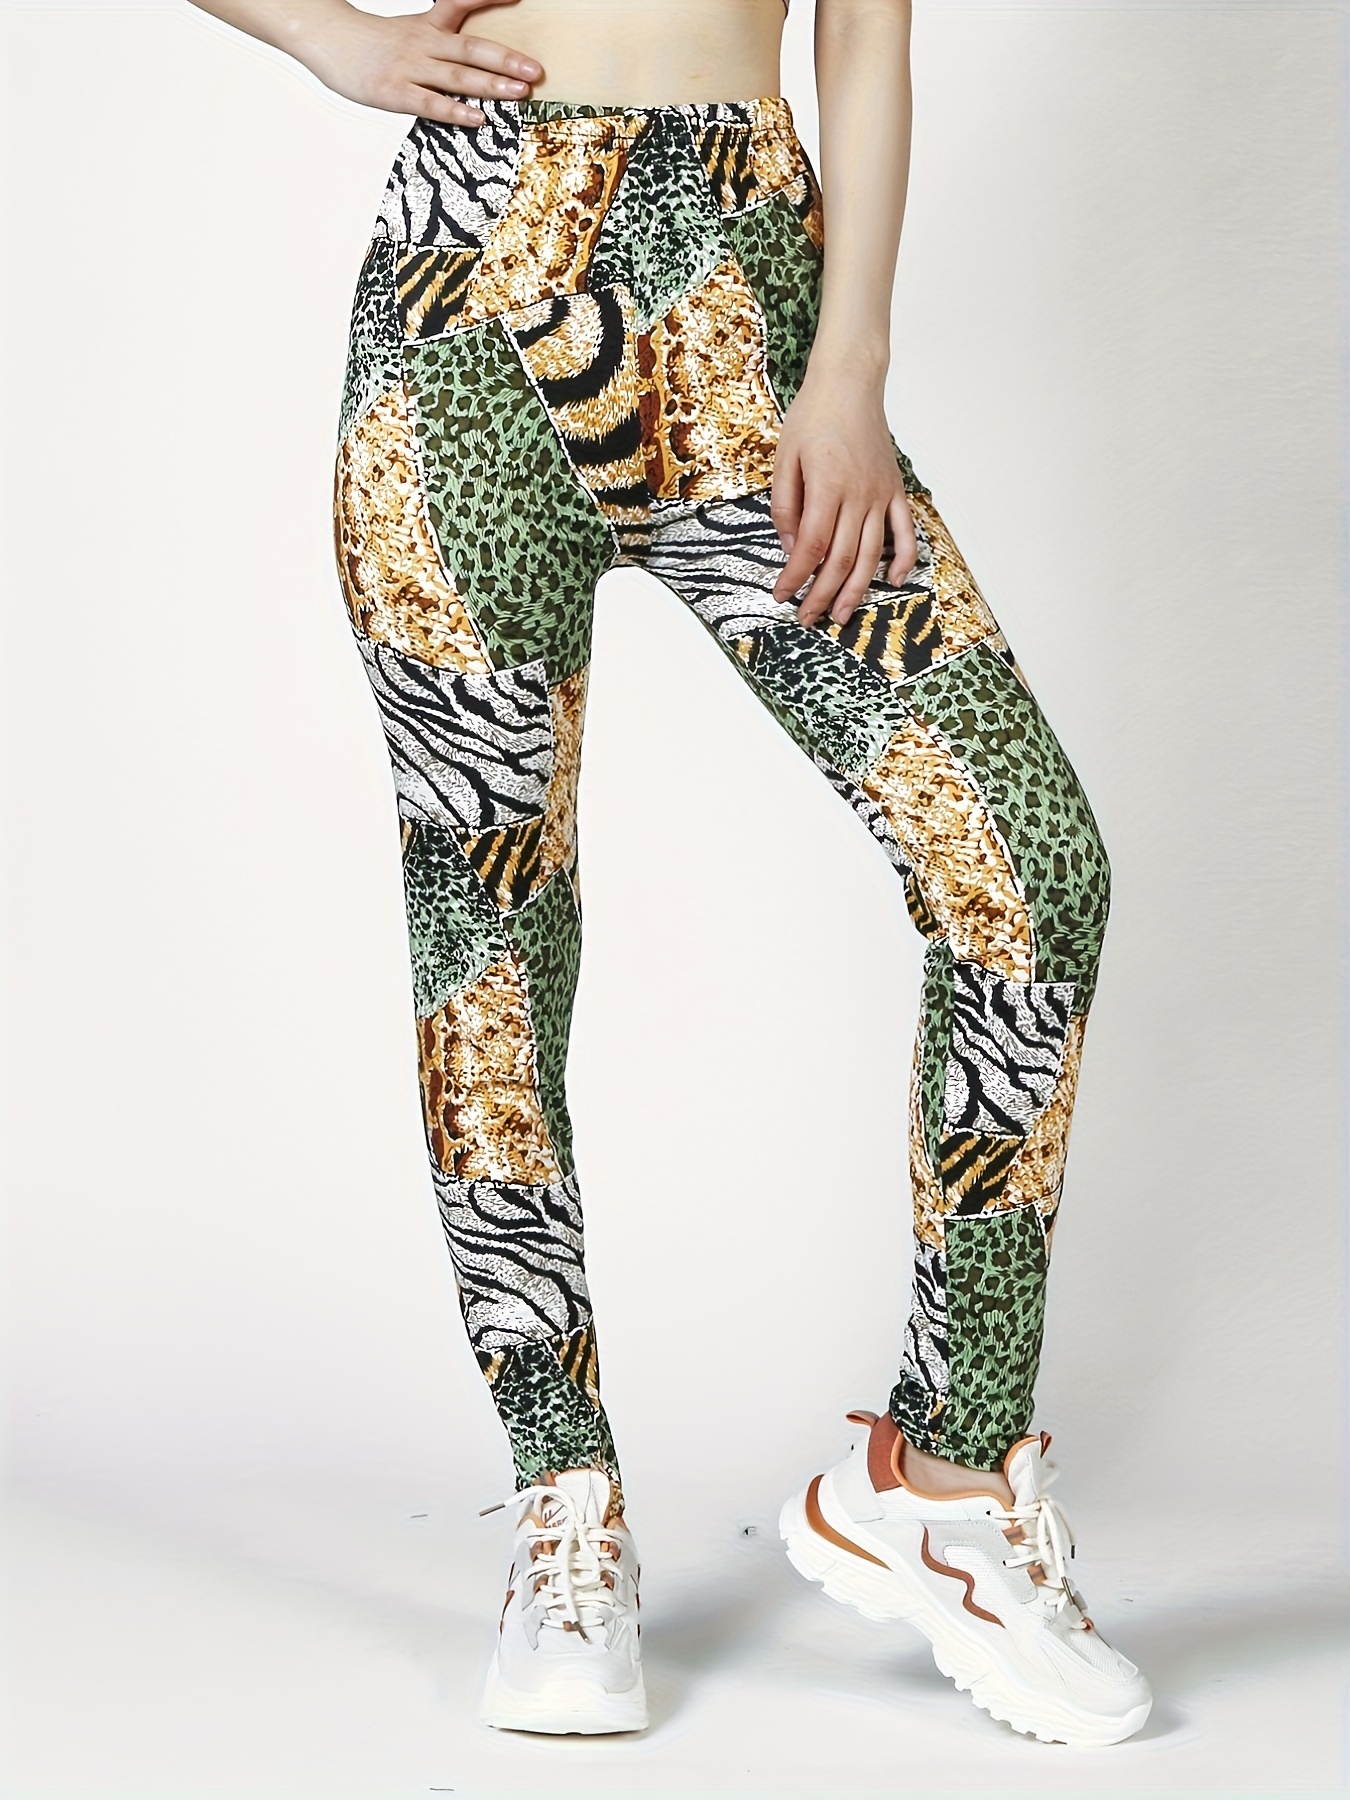 Tiger Stripe Animal Print Neon Spandex Leggings Vintage 80s inspired  Costume S